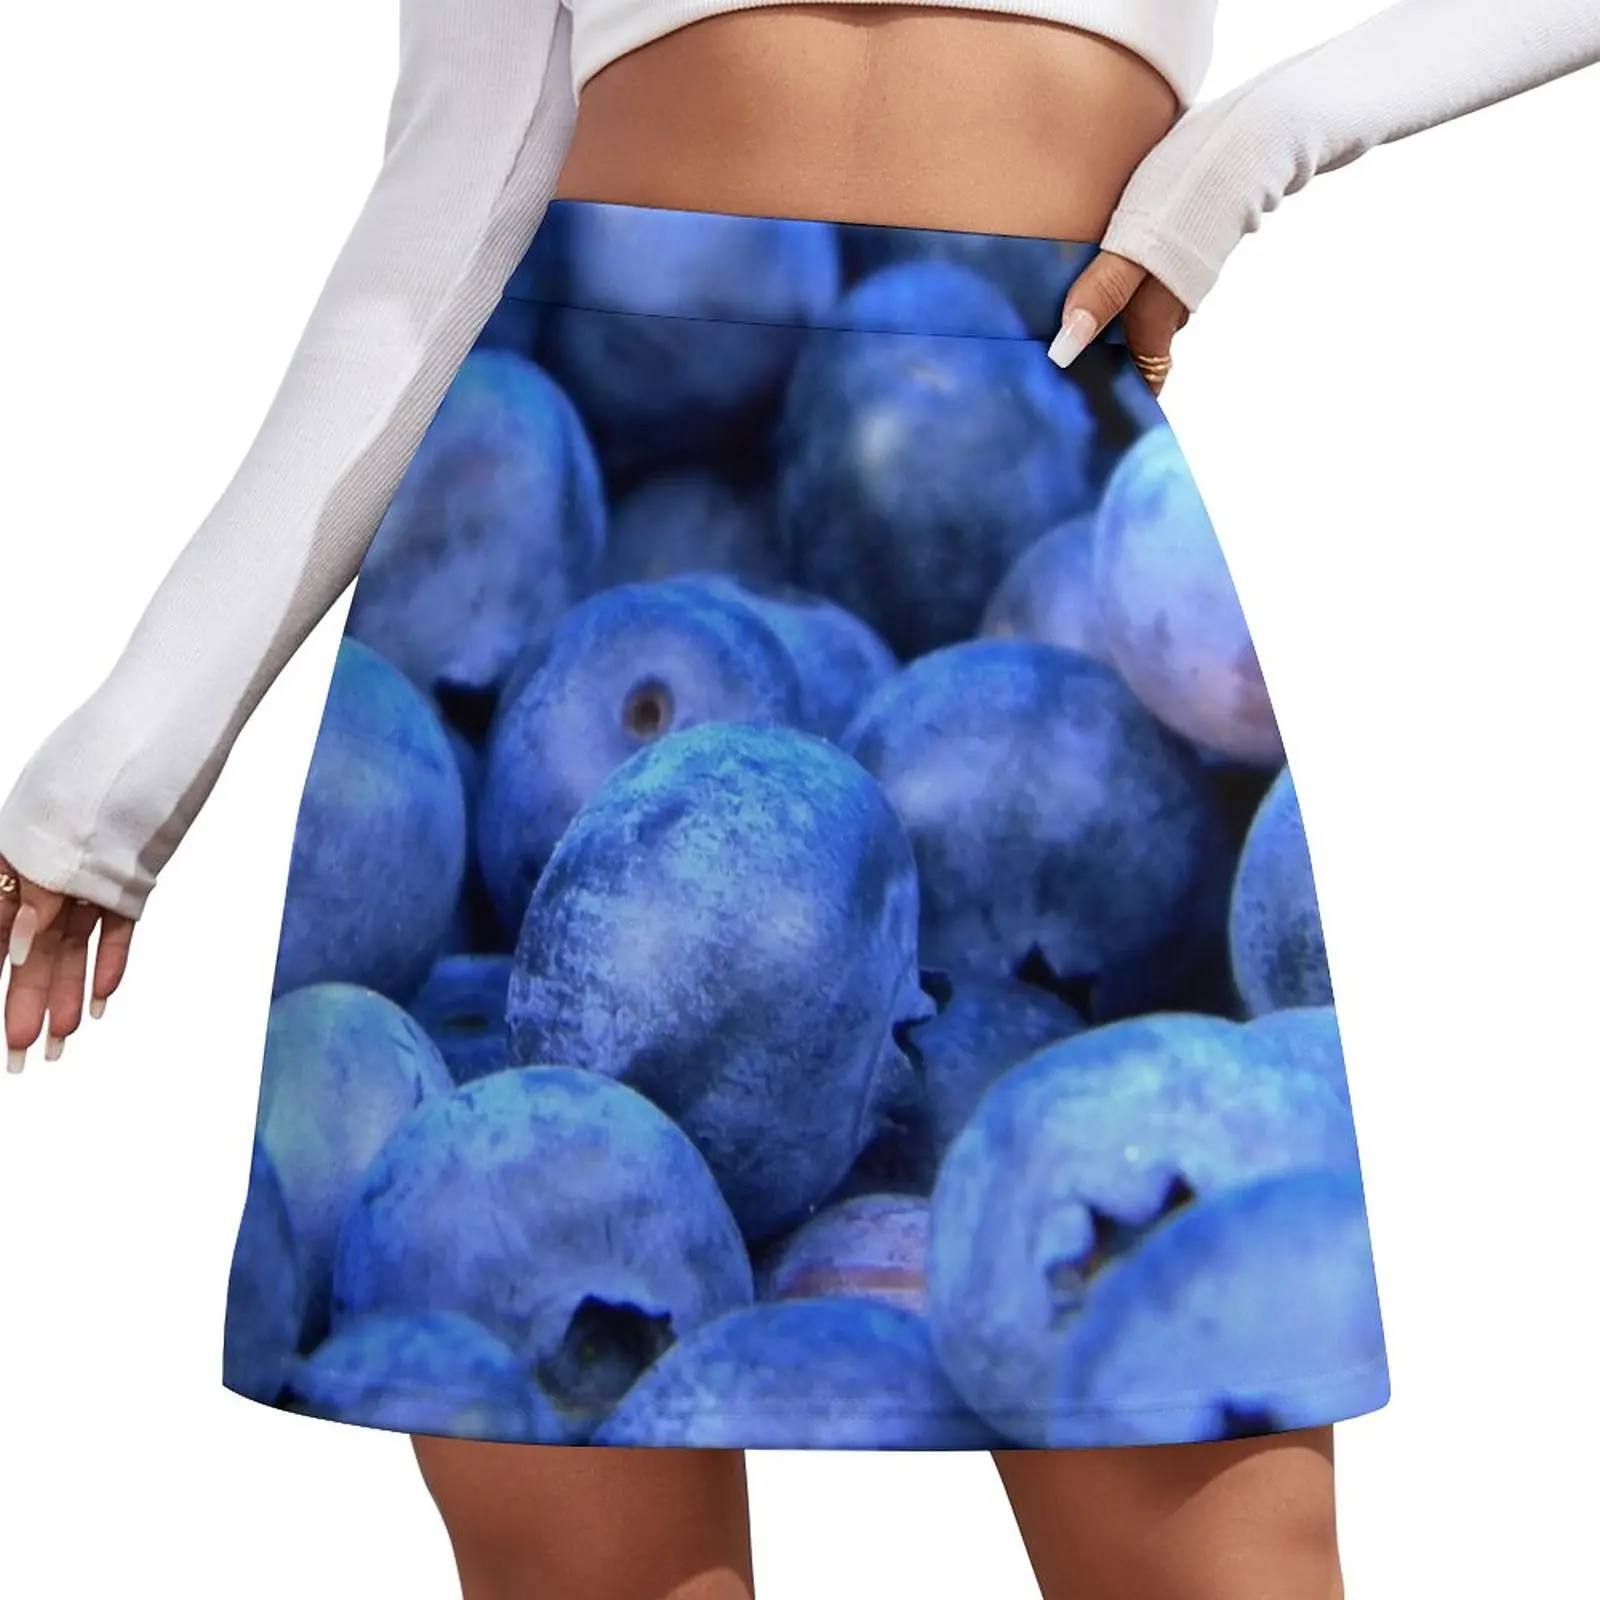 Blueberries Mini Skirt girls skirt womens clothing